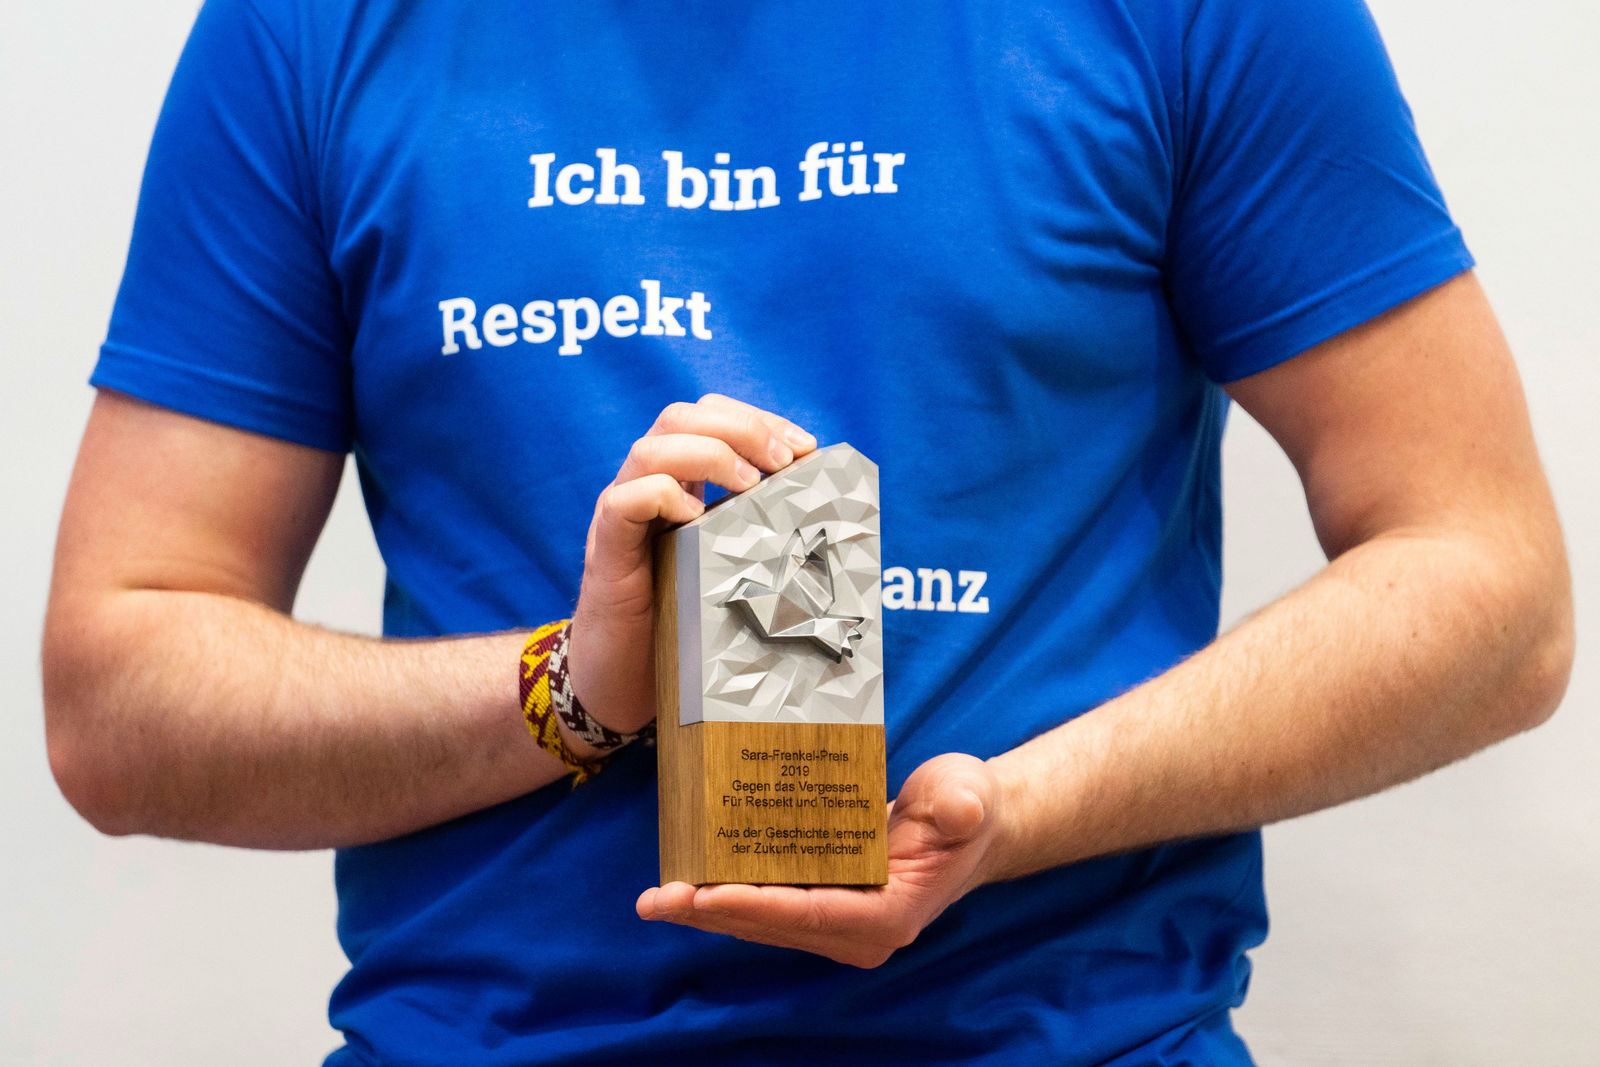 Volkswagen vergibt erstmals den Sara-Frenkel-Preis für Respekt, Toleranz und Zivilcourage an junge Bürgerinnen und Bürger